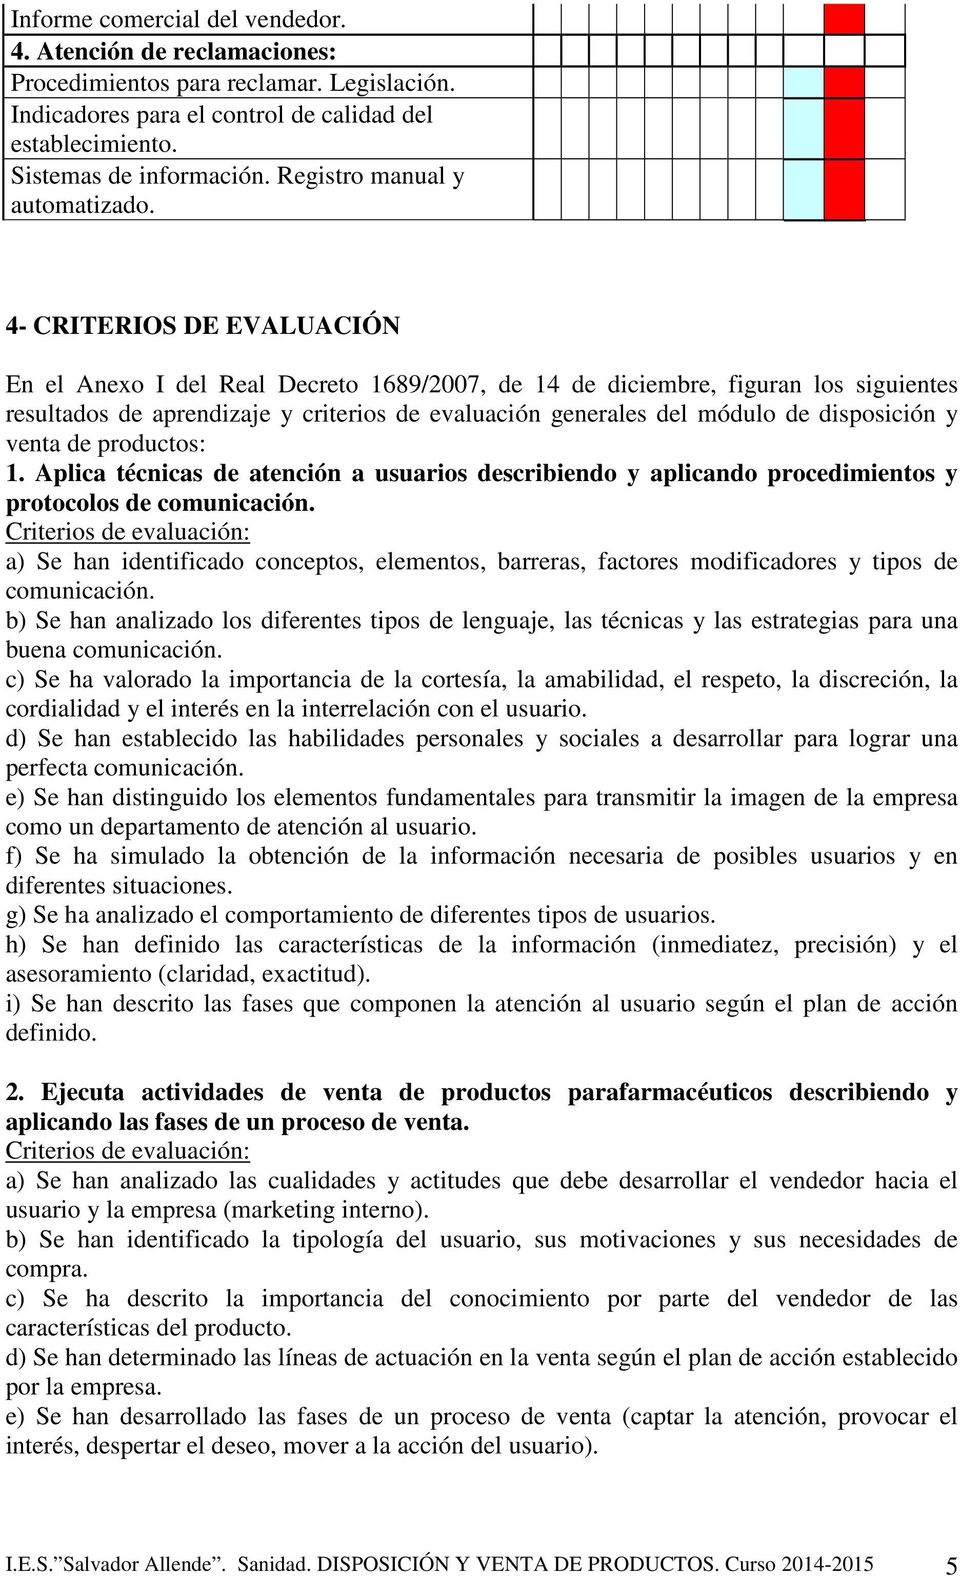 4- CRITERIOS DE EVALUACIÓN En el Anexo I del Real Decreto 1689/2007, de 14 de diciembre, figuran los siguientes resultados de aprendizaje y criterios de evaluación generales del módulo de disposición